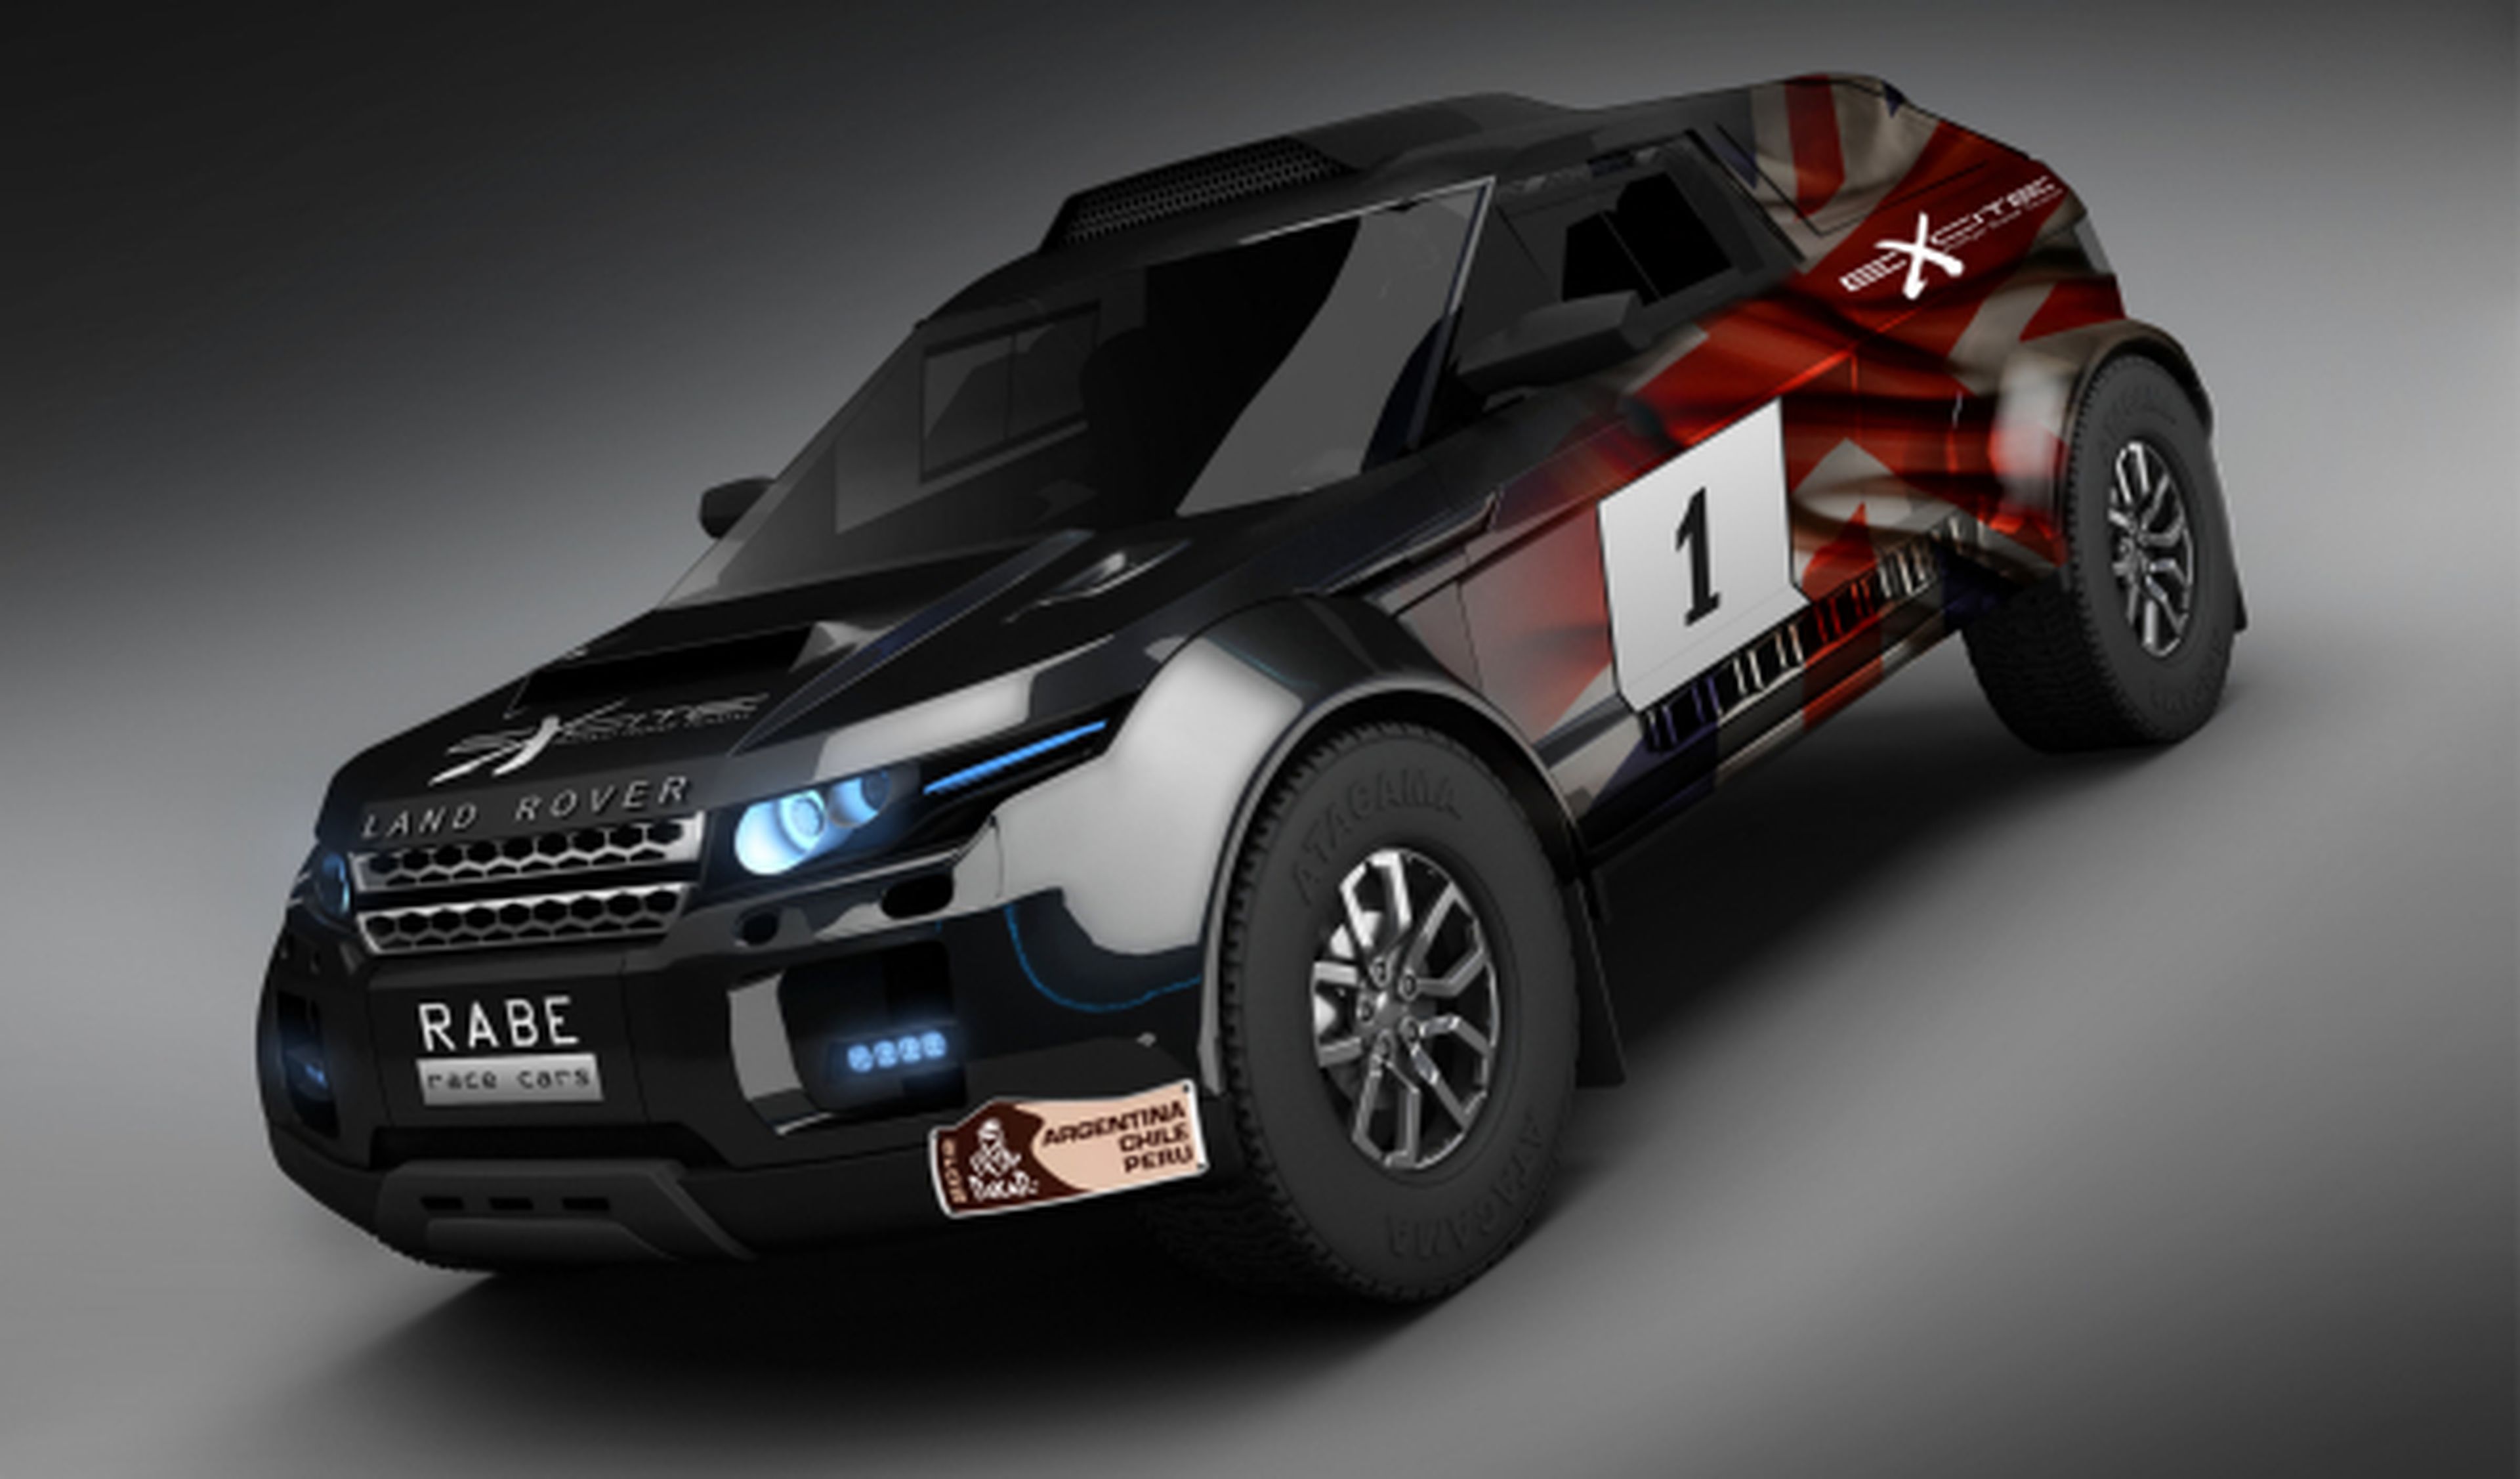 El Range Rover Evoque correrá el Dakar 2013